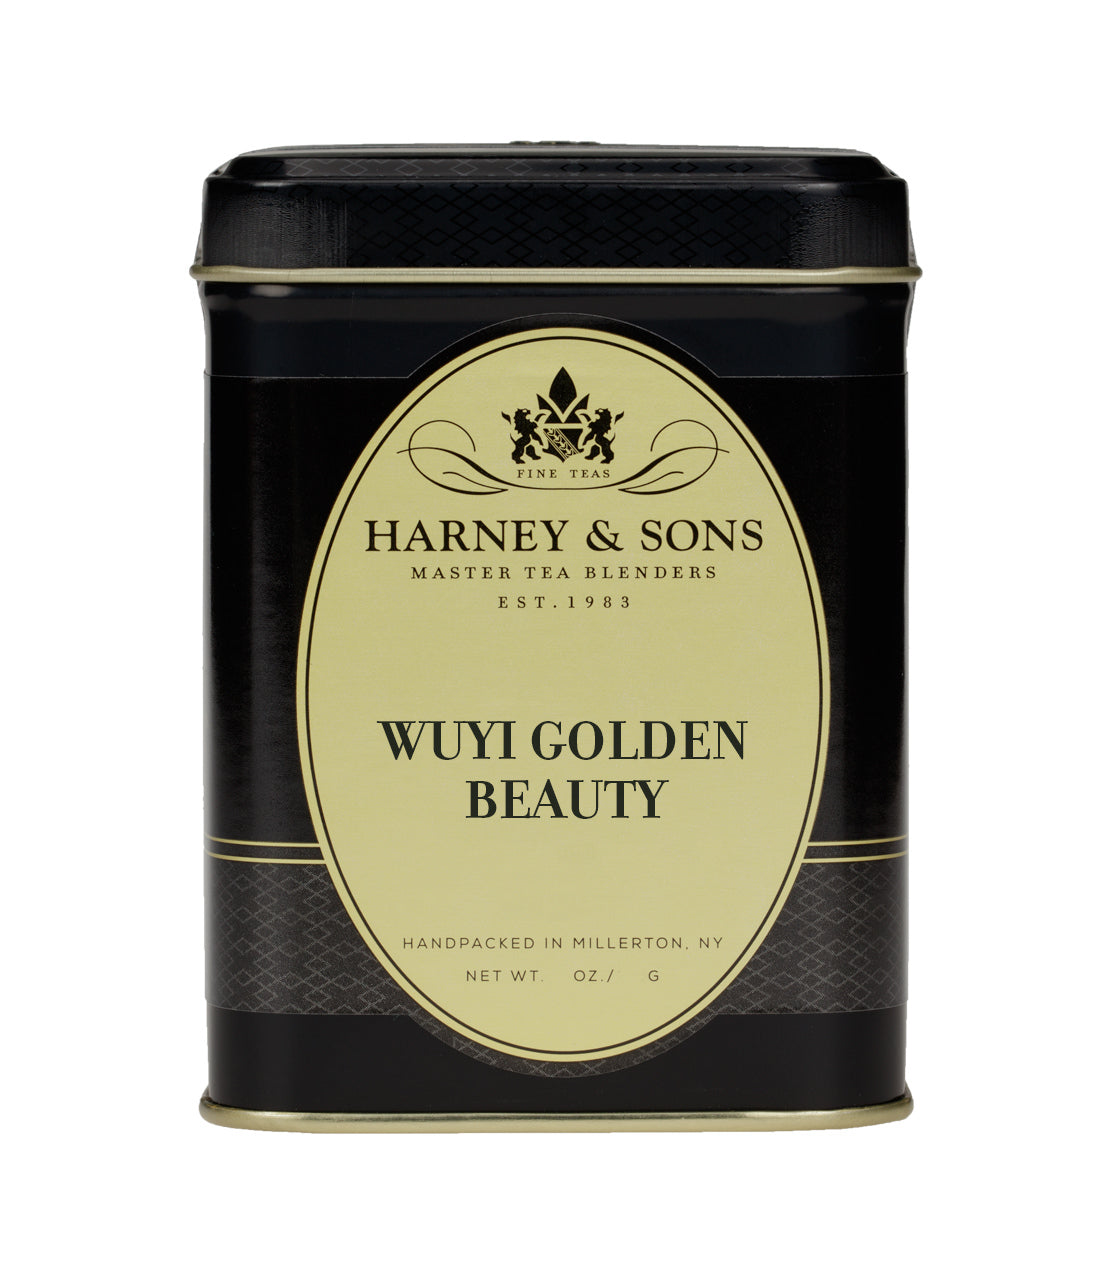 Wuyi Golden Beauty - Loose 3 oz. Tin - Harney & Sons Fine Teas